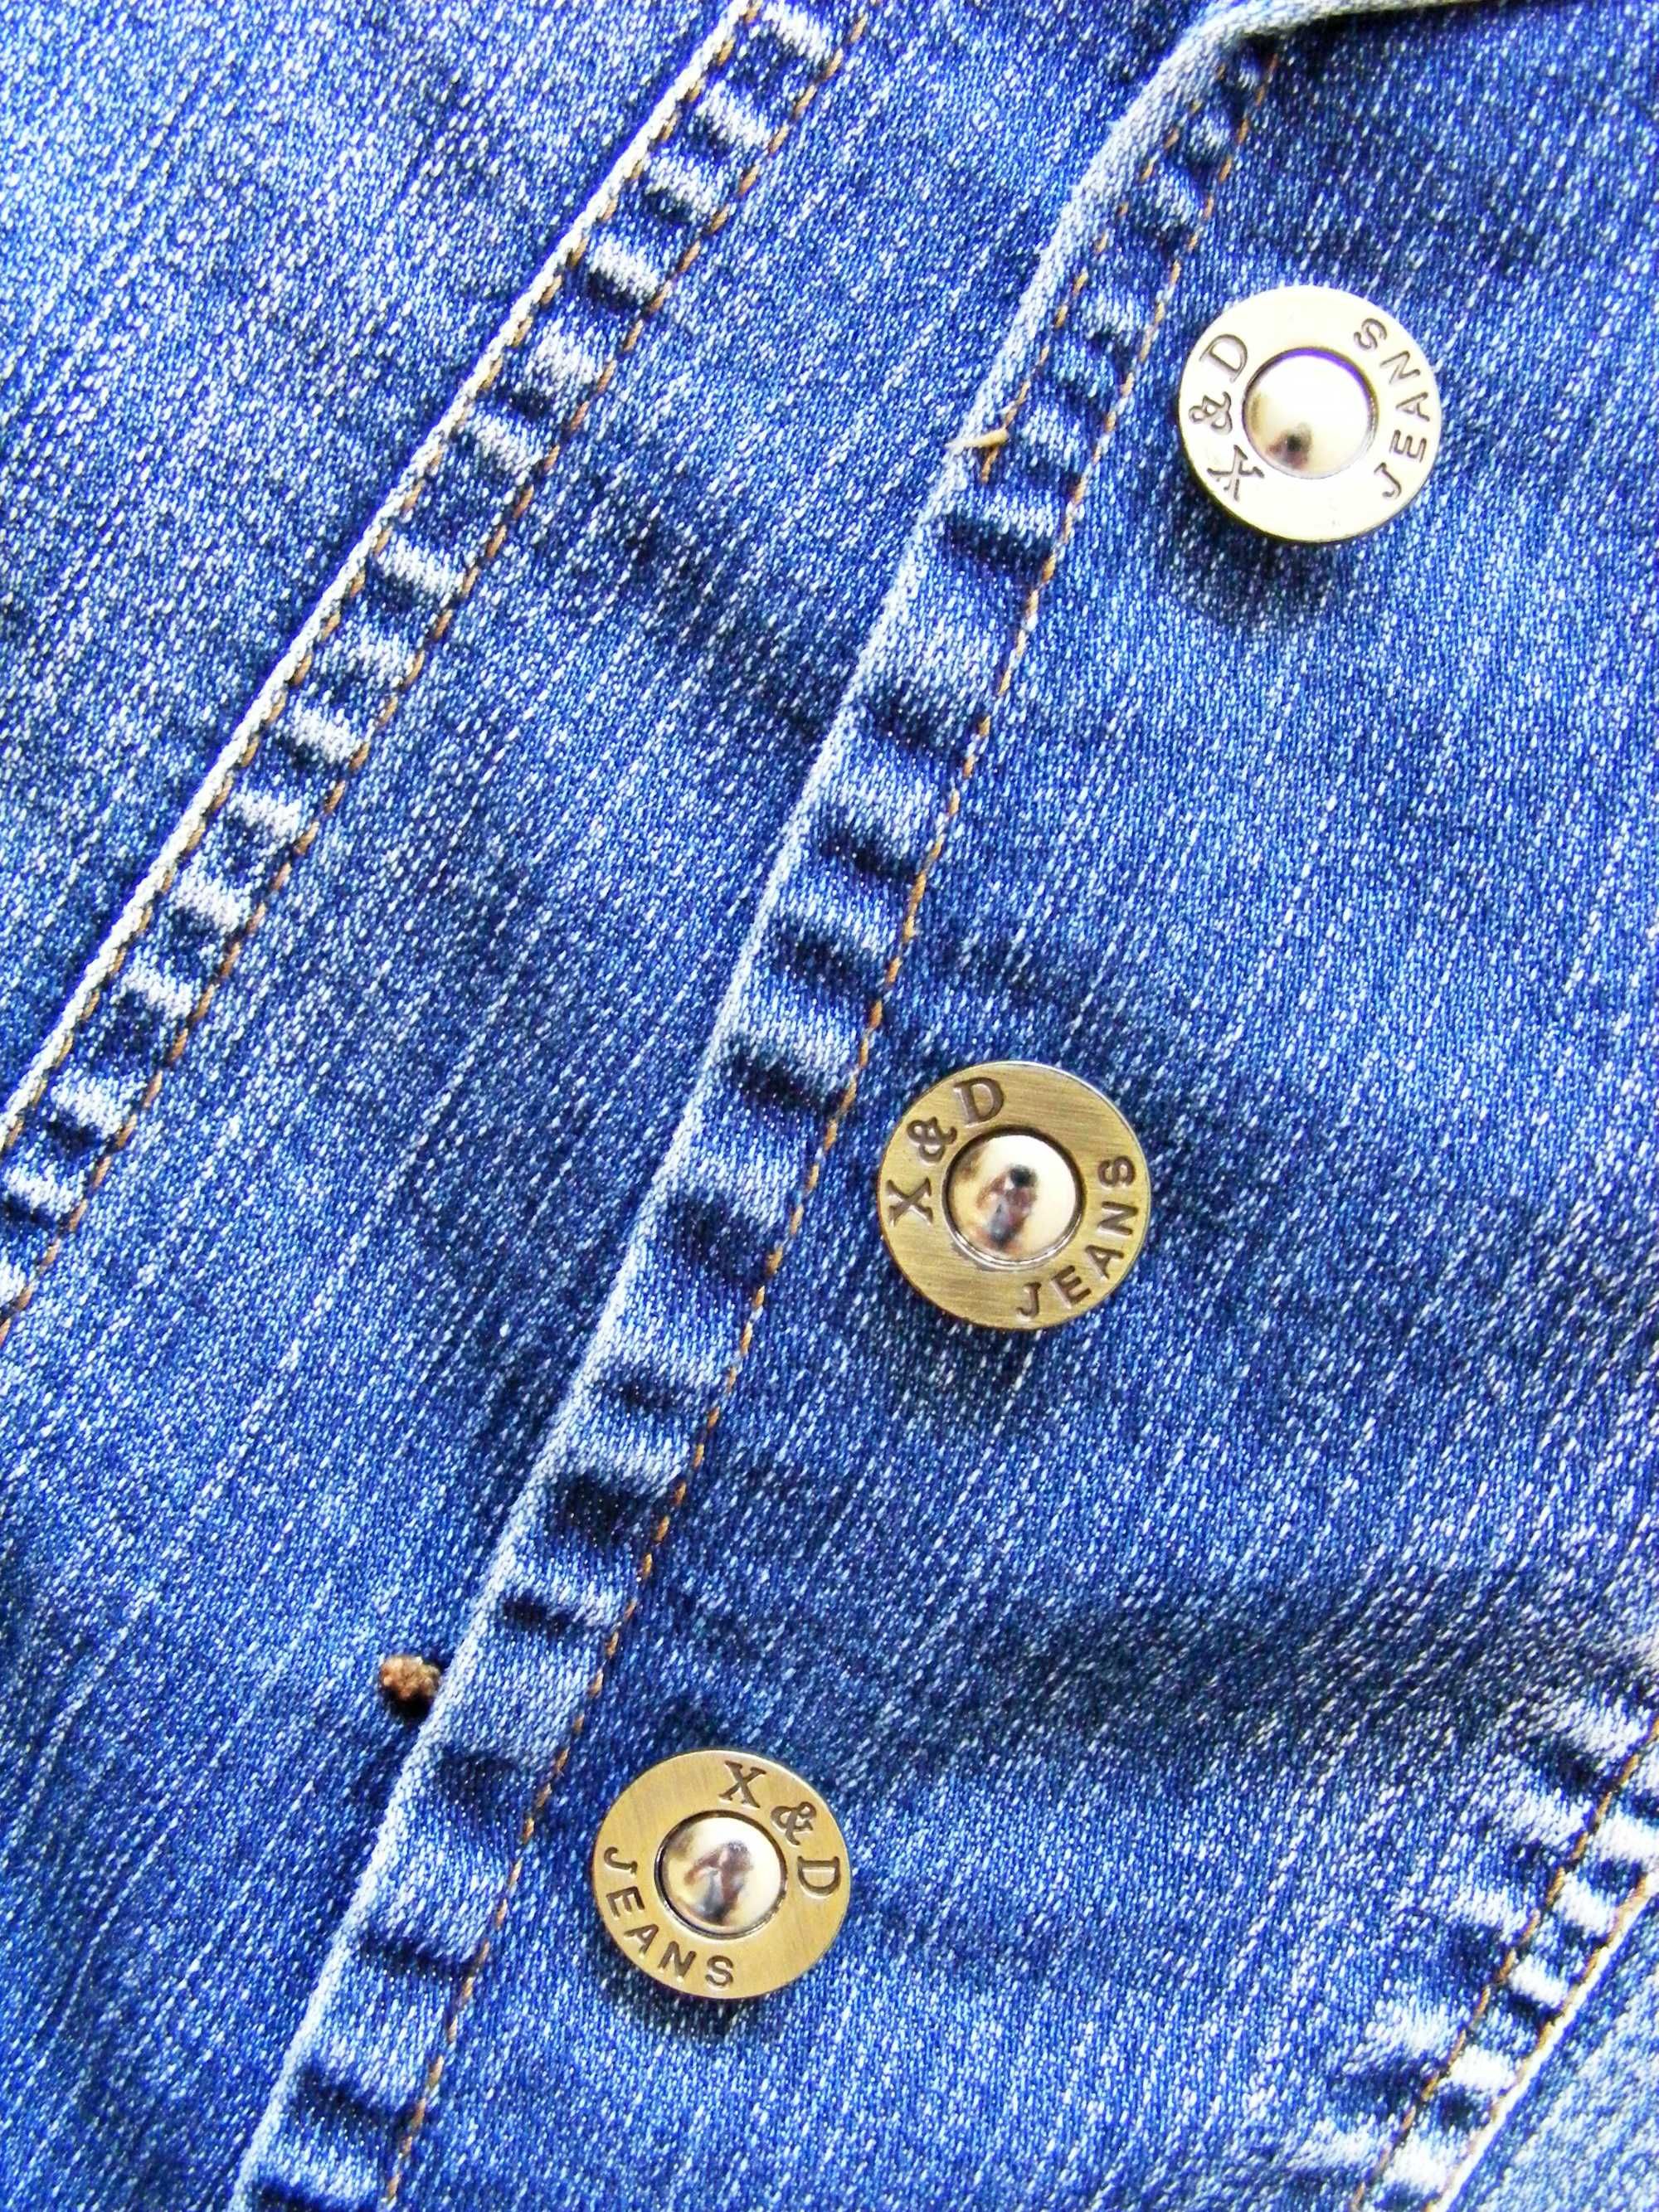 Джинсовая куртка жакет пиджак женский синий М / 46 Cotton Котон